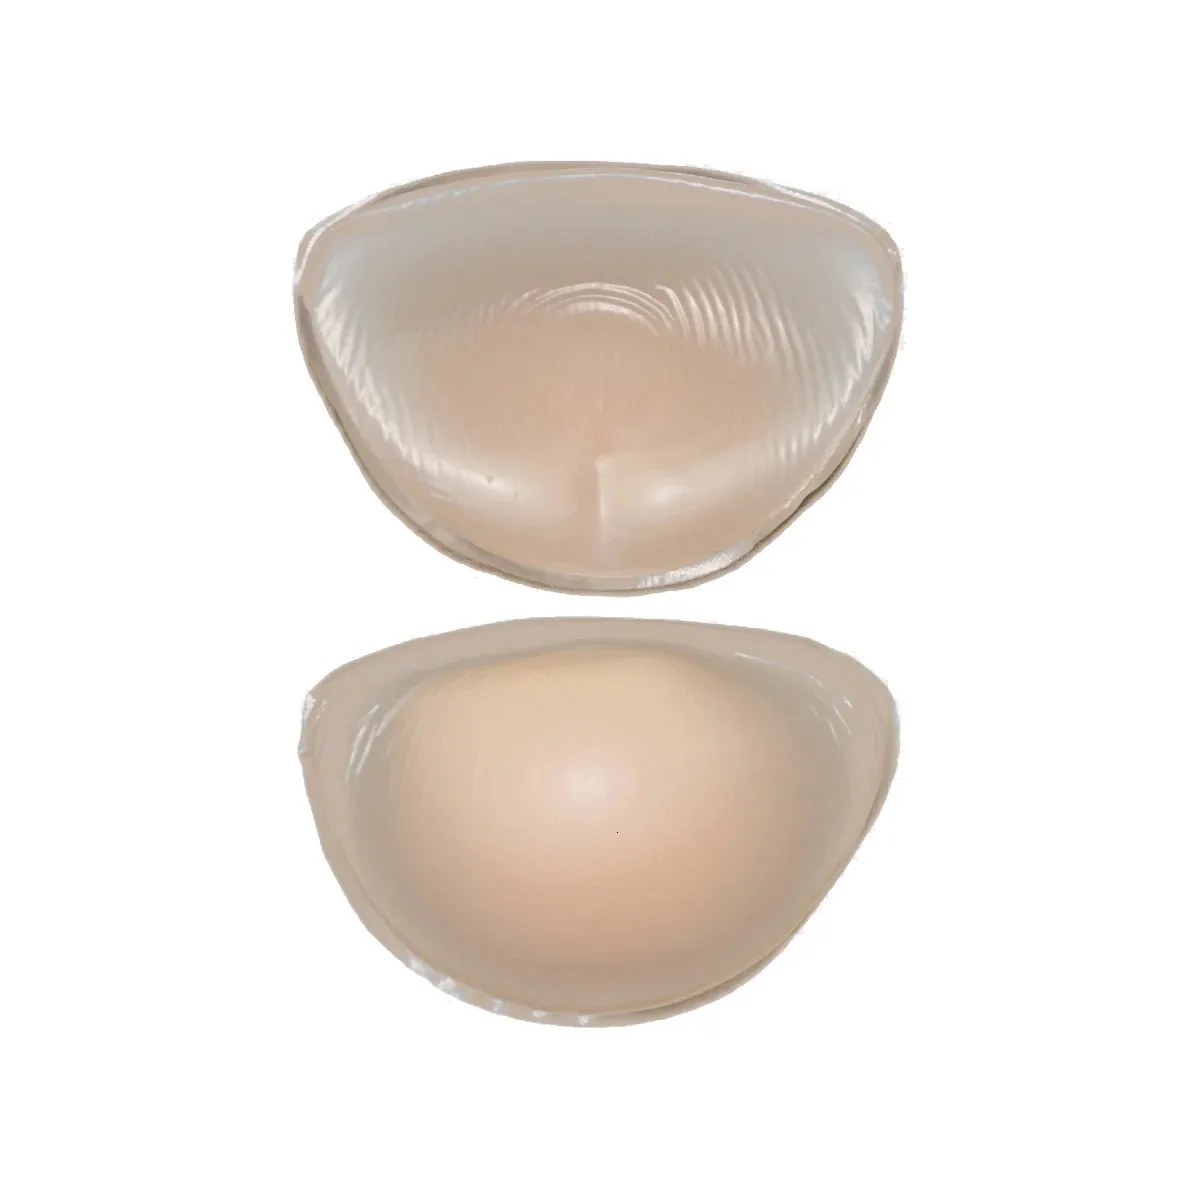 Forma de mama 120g sutiã nu push up moldagem acolchoamento formas de mama de silicone realçadores reutilizáveis invisíveis almofadas de sutiã para sutiã esportivo 231211